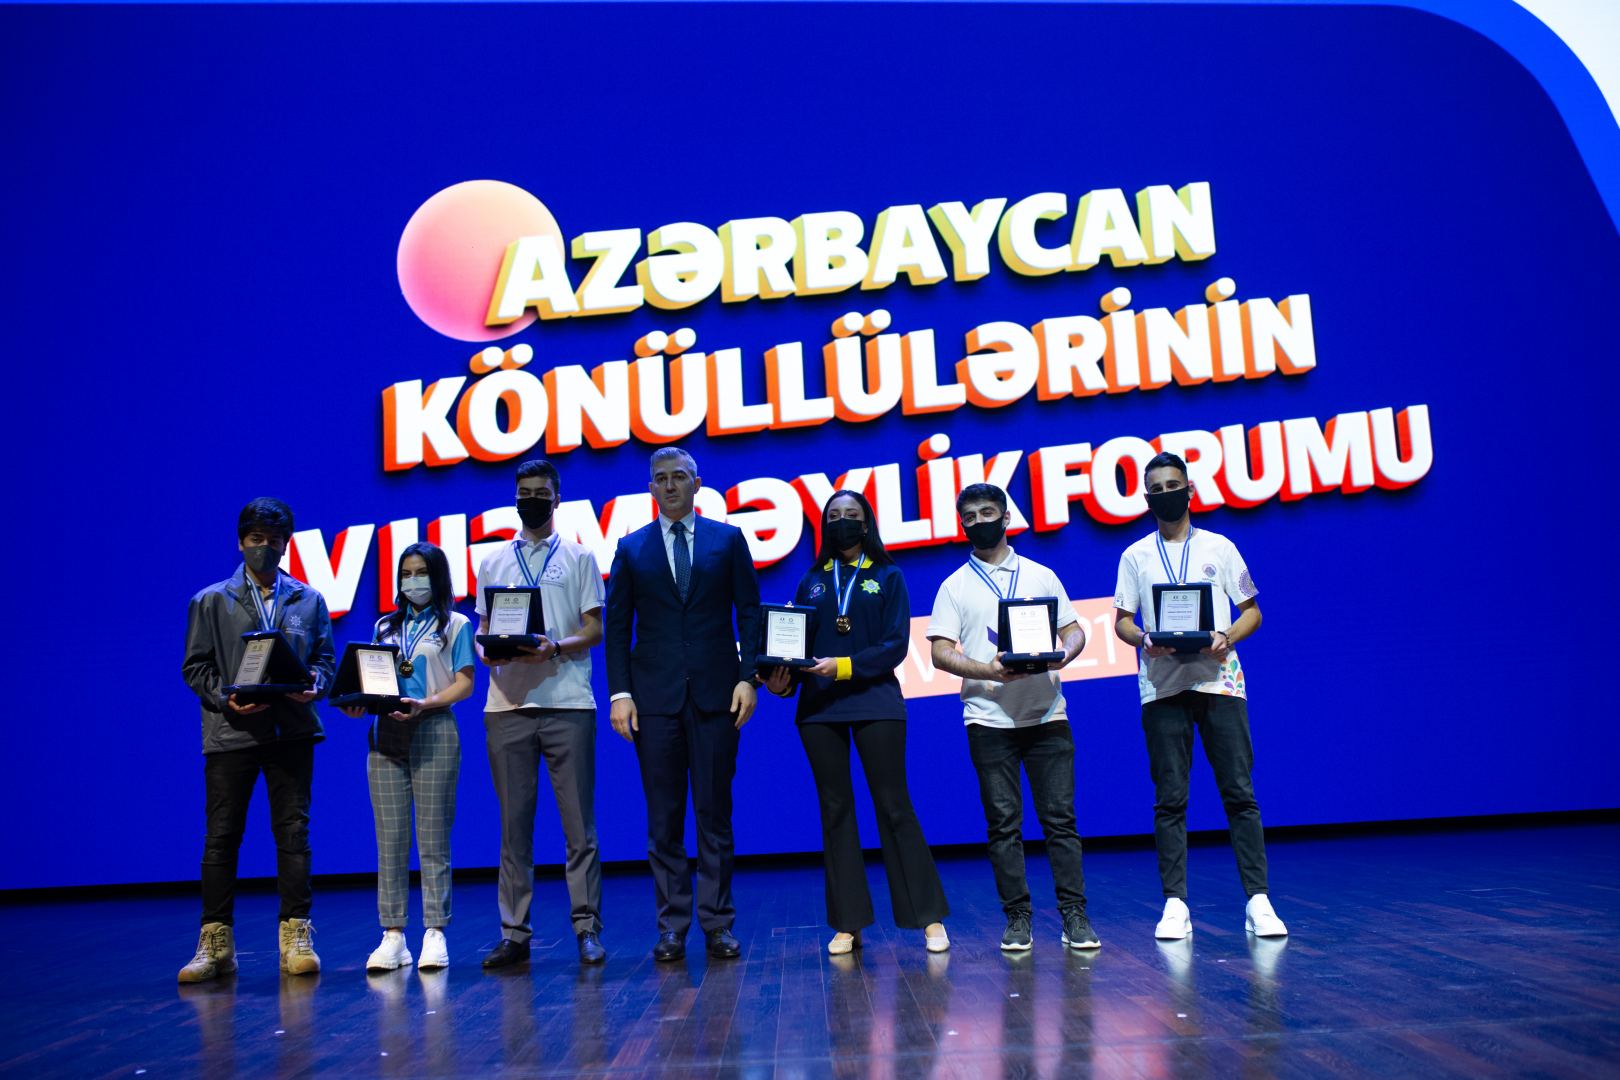 Könüllülər Forumu başlayıb (FOTO) - Gallery Image